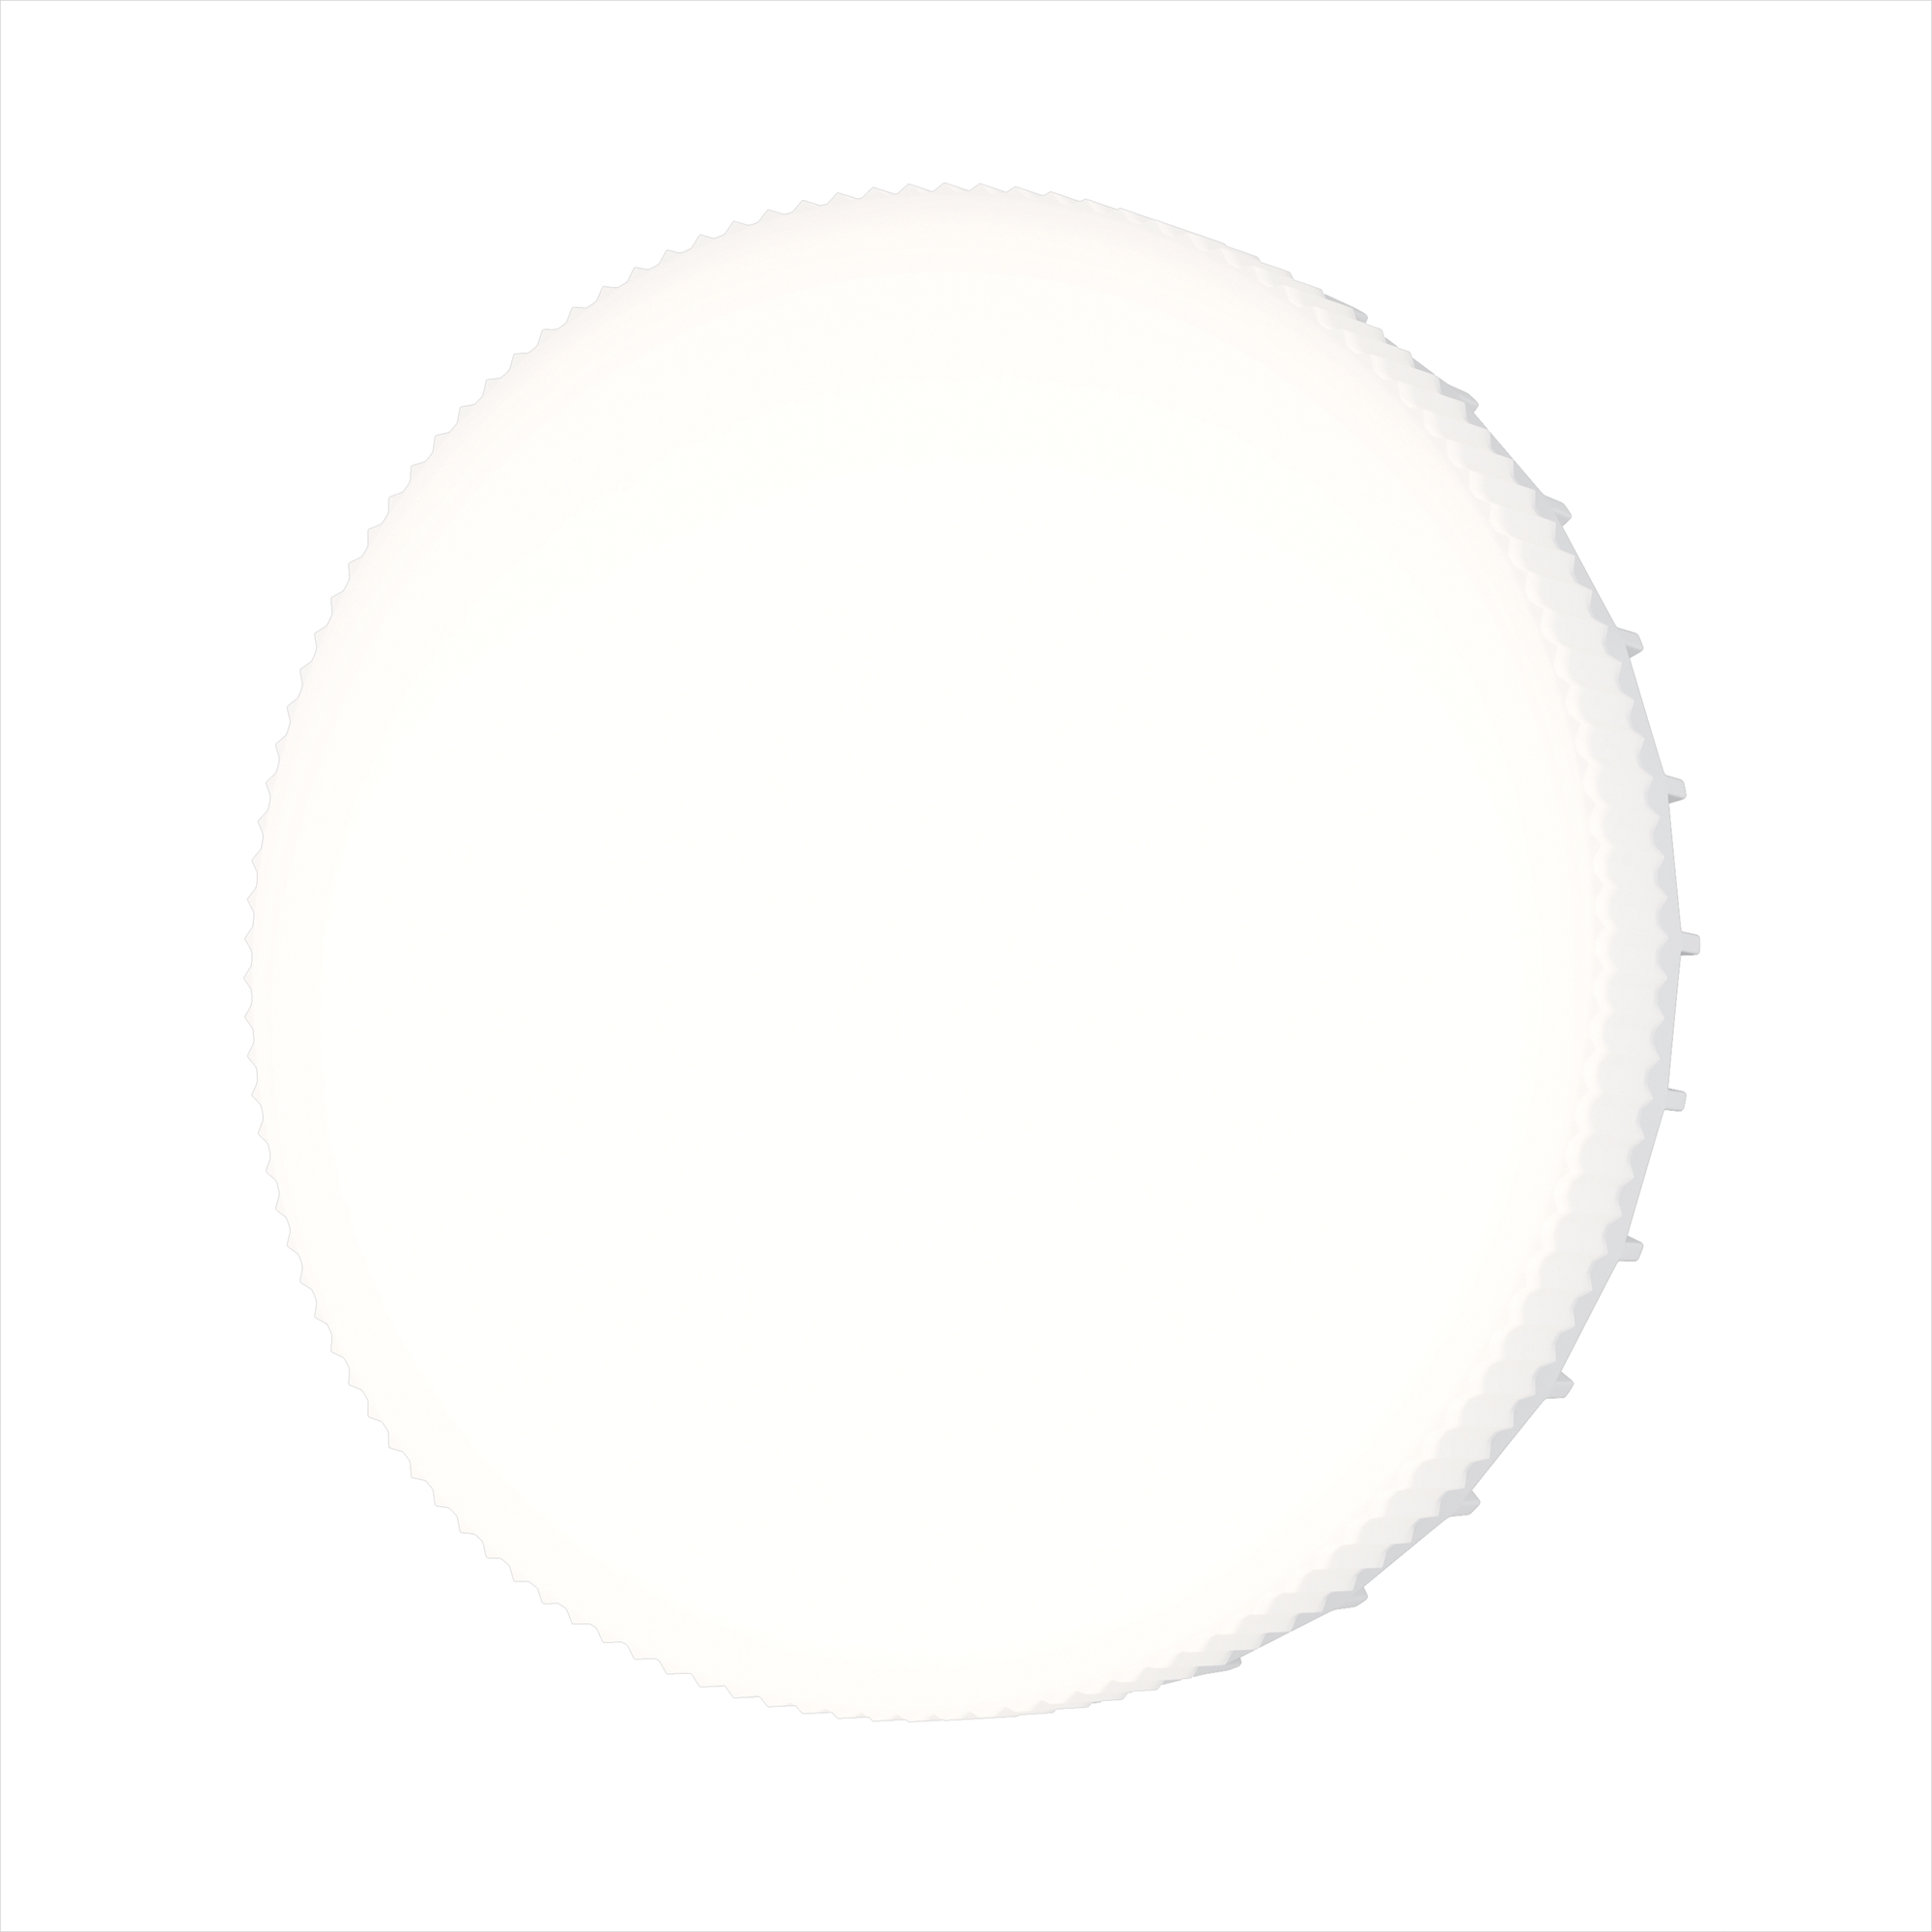 Светодиодная лампа Voltega WI-FI BULBS Таблетка 9W 630Lm 2700K GX53 2431, цвет белый